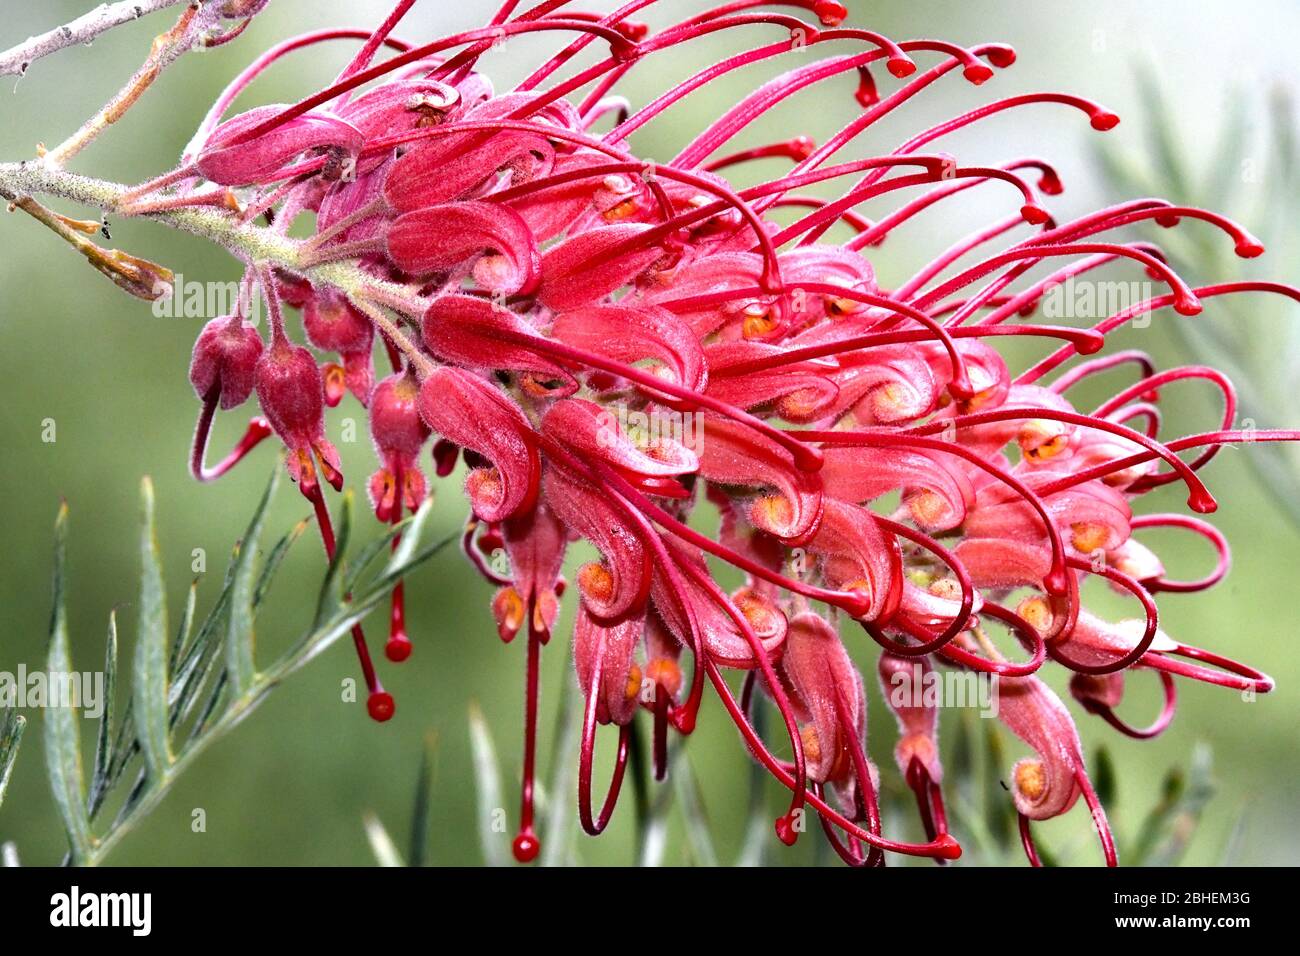 Australian flower grevillea blossom Stock Photo